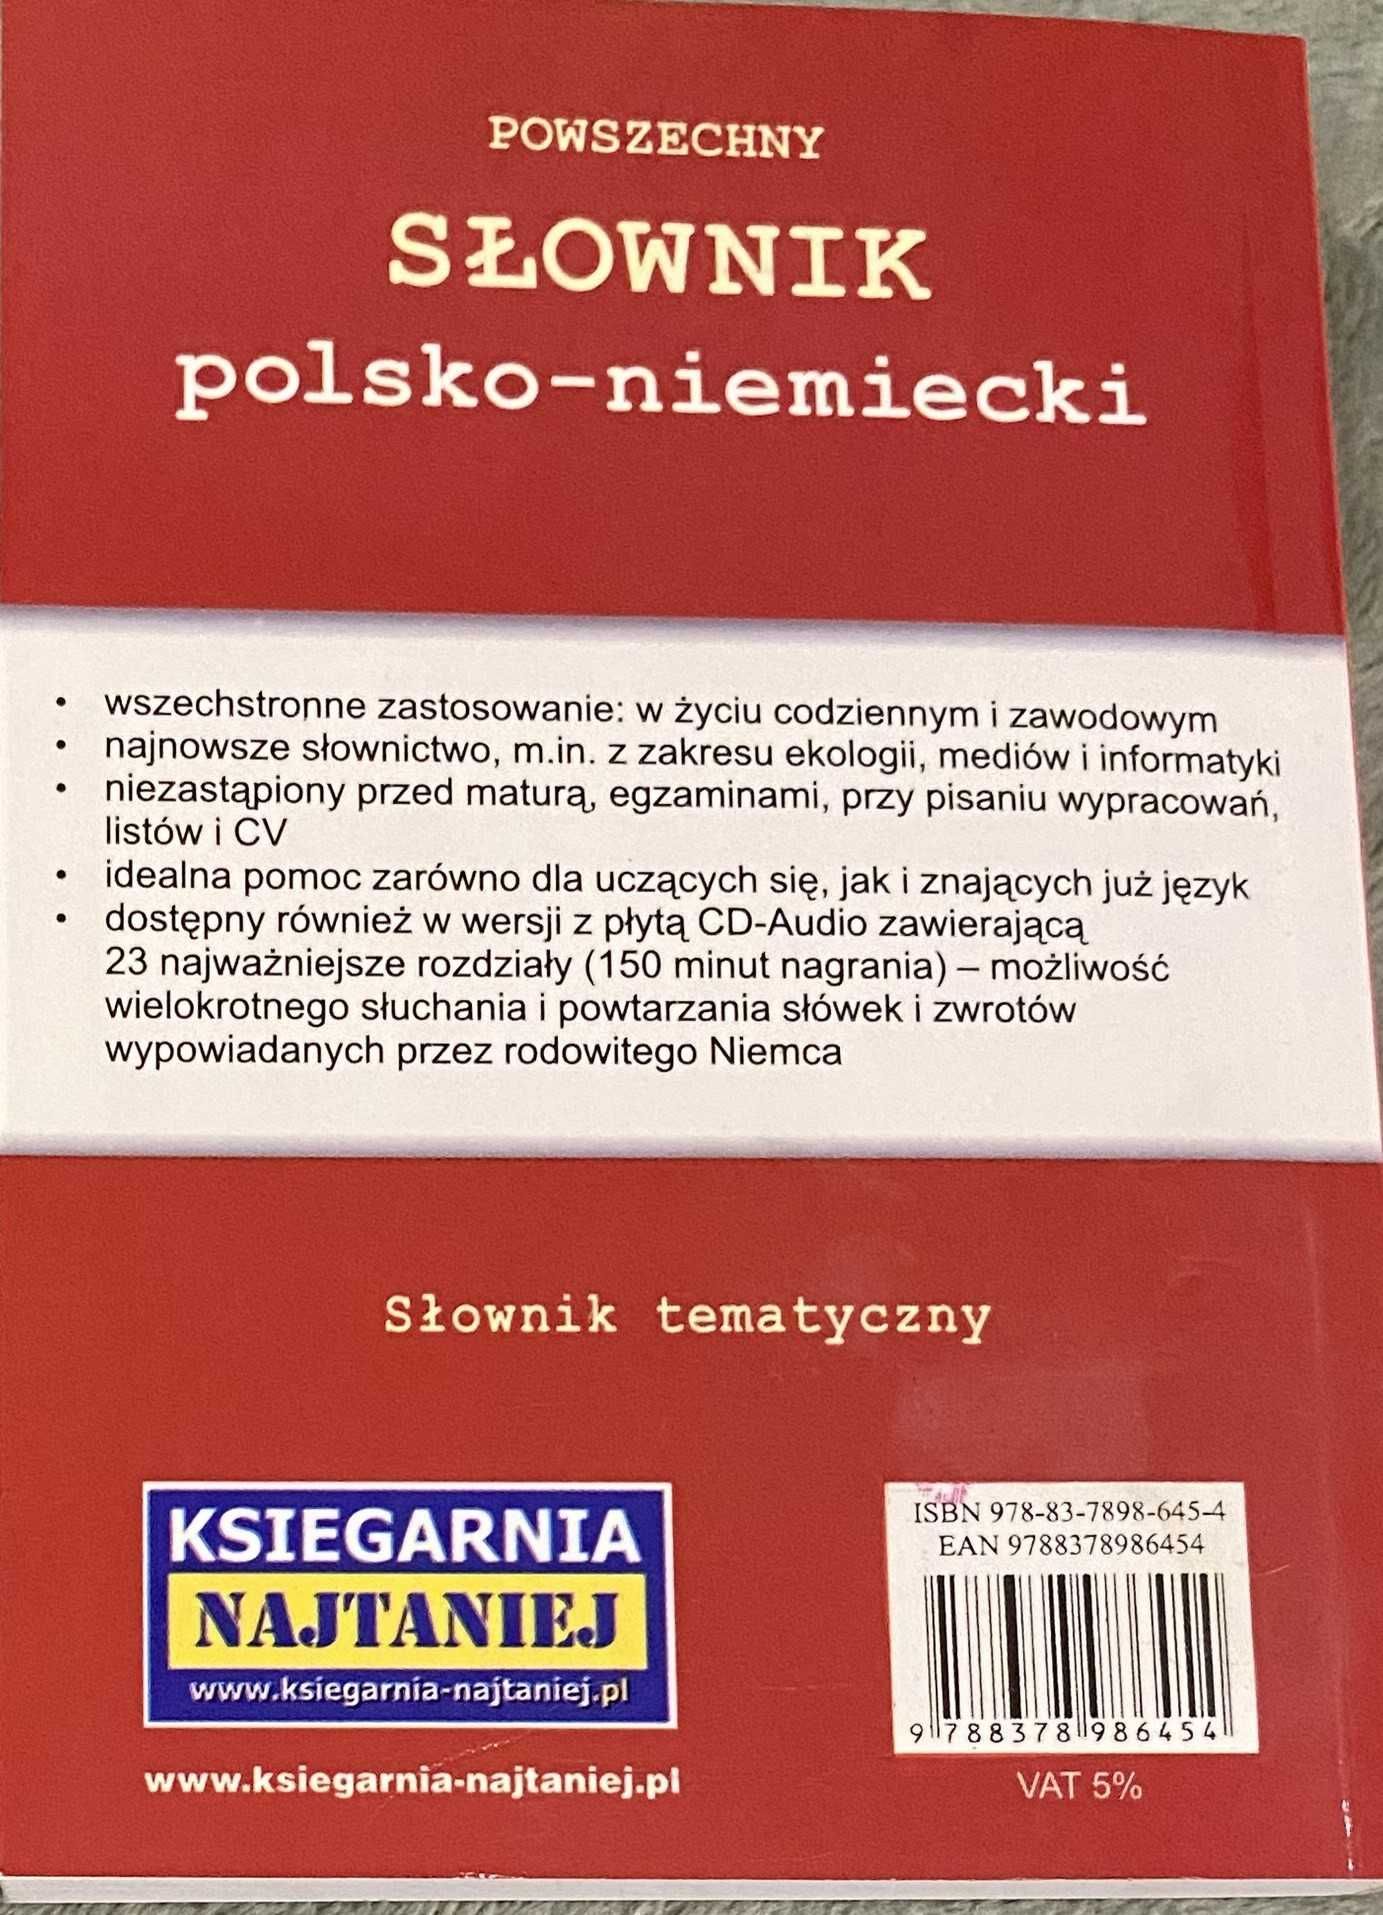 Słownik Polsko-Niemiecki w bardzo dobrym stanie !!